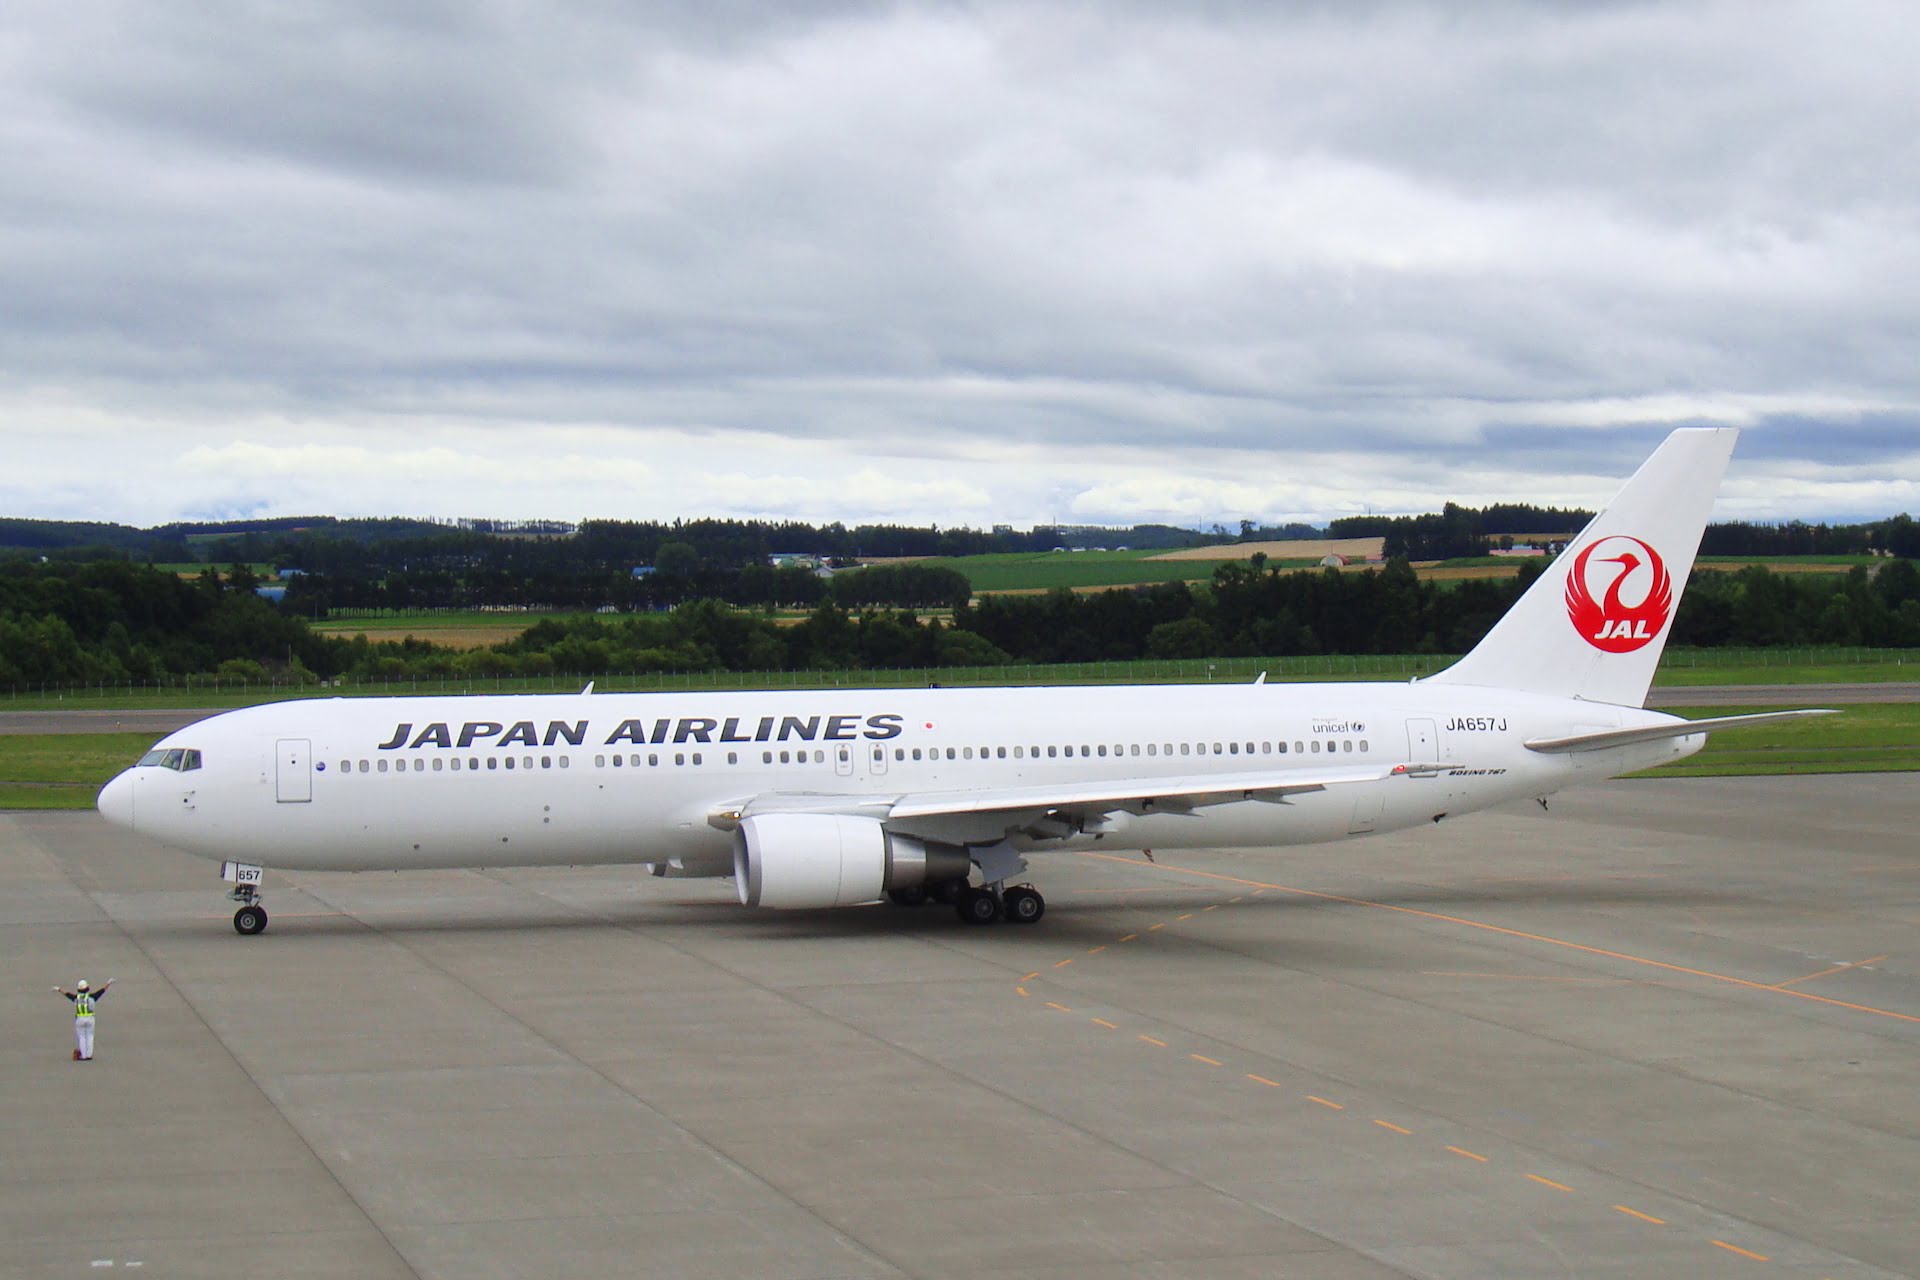 日本航空 4 月飛台灣航線 60 週年慶 JAL 優惠促銷方案 Japan Airlines Boeing 767 300ER